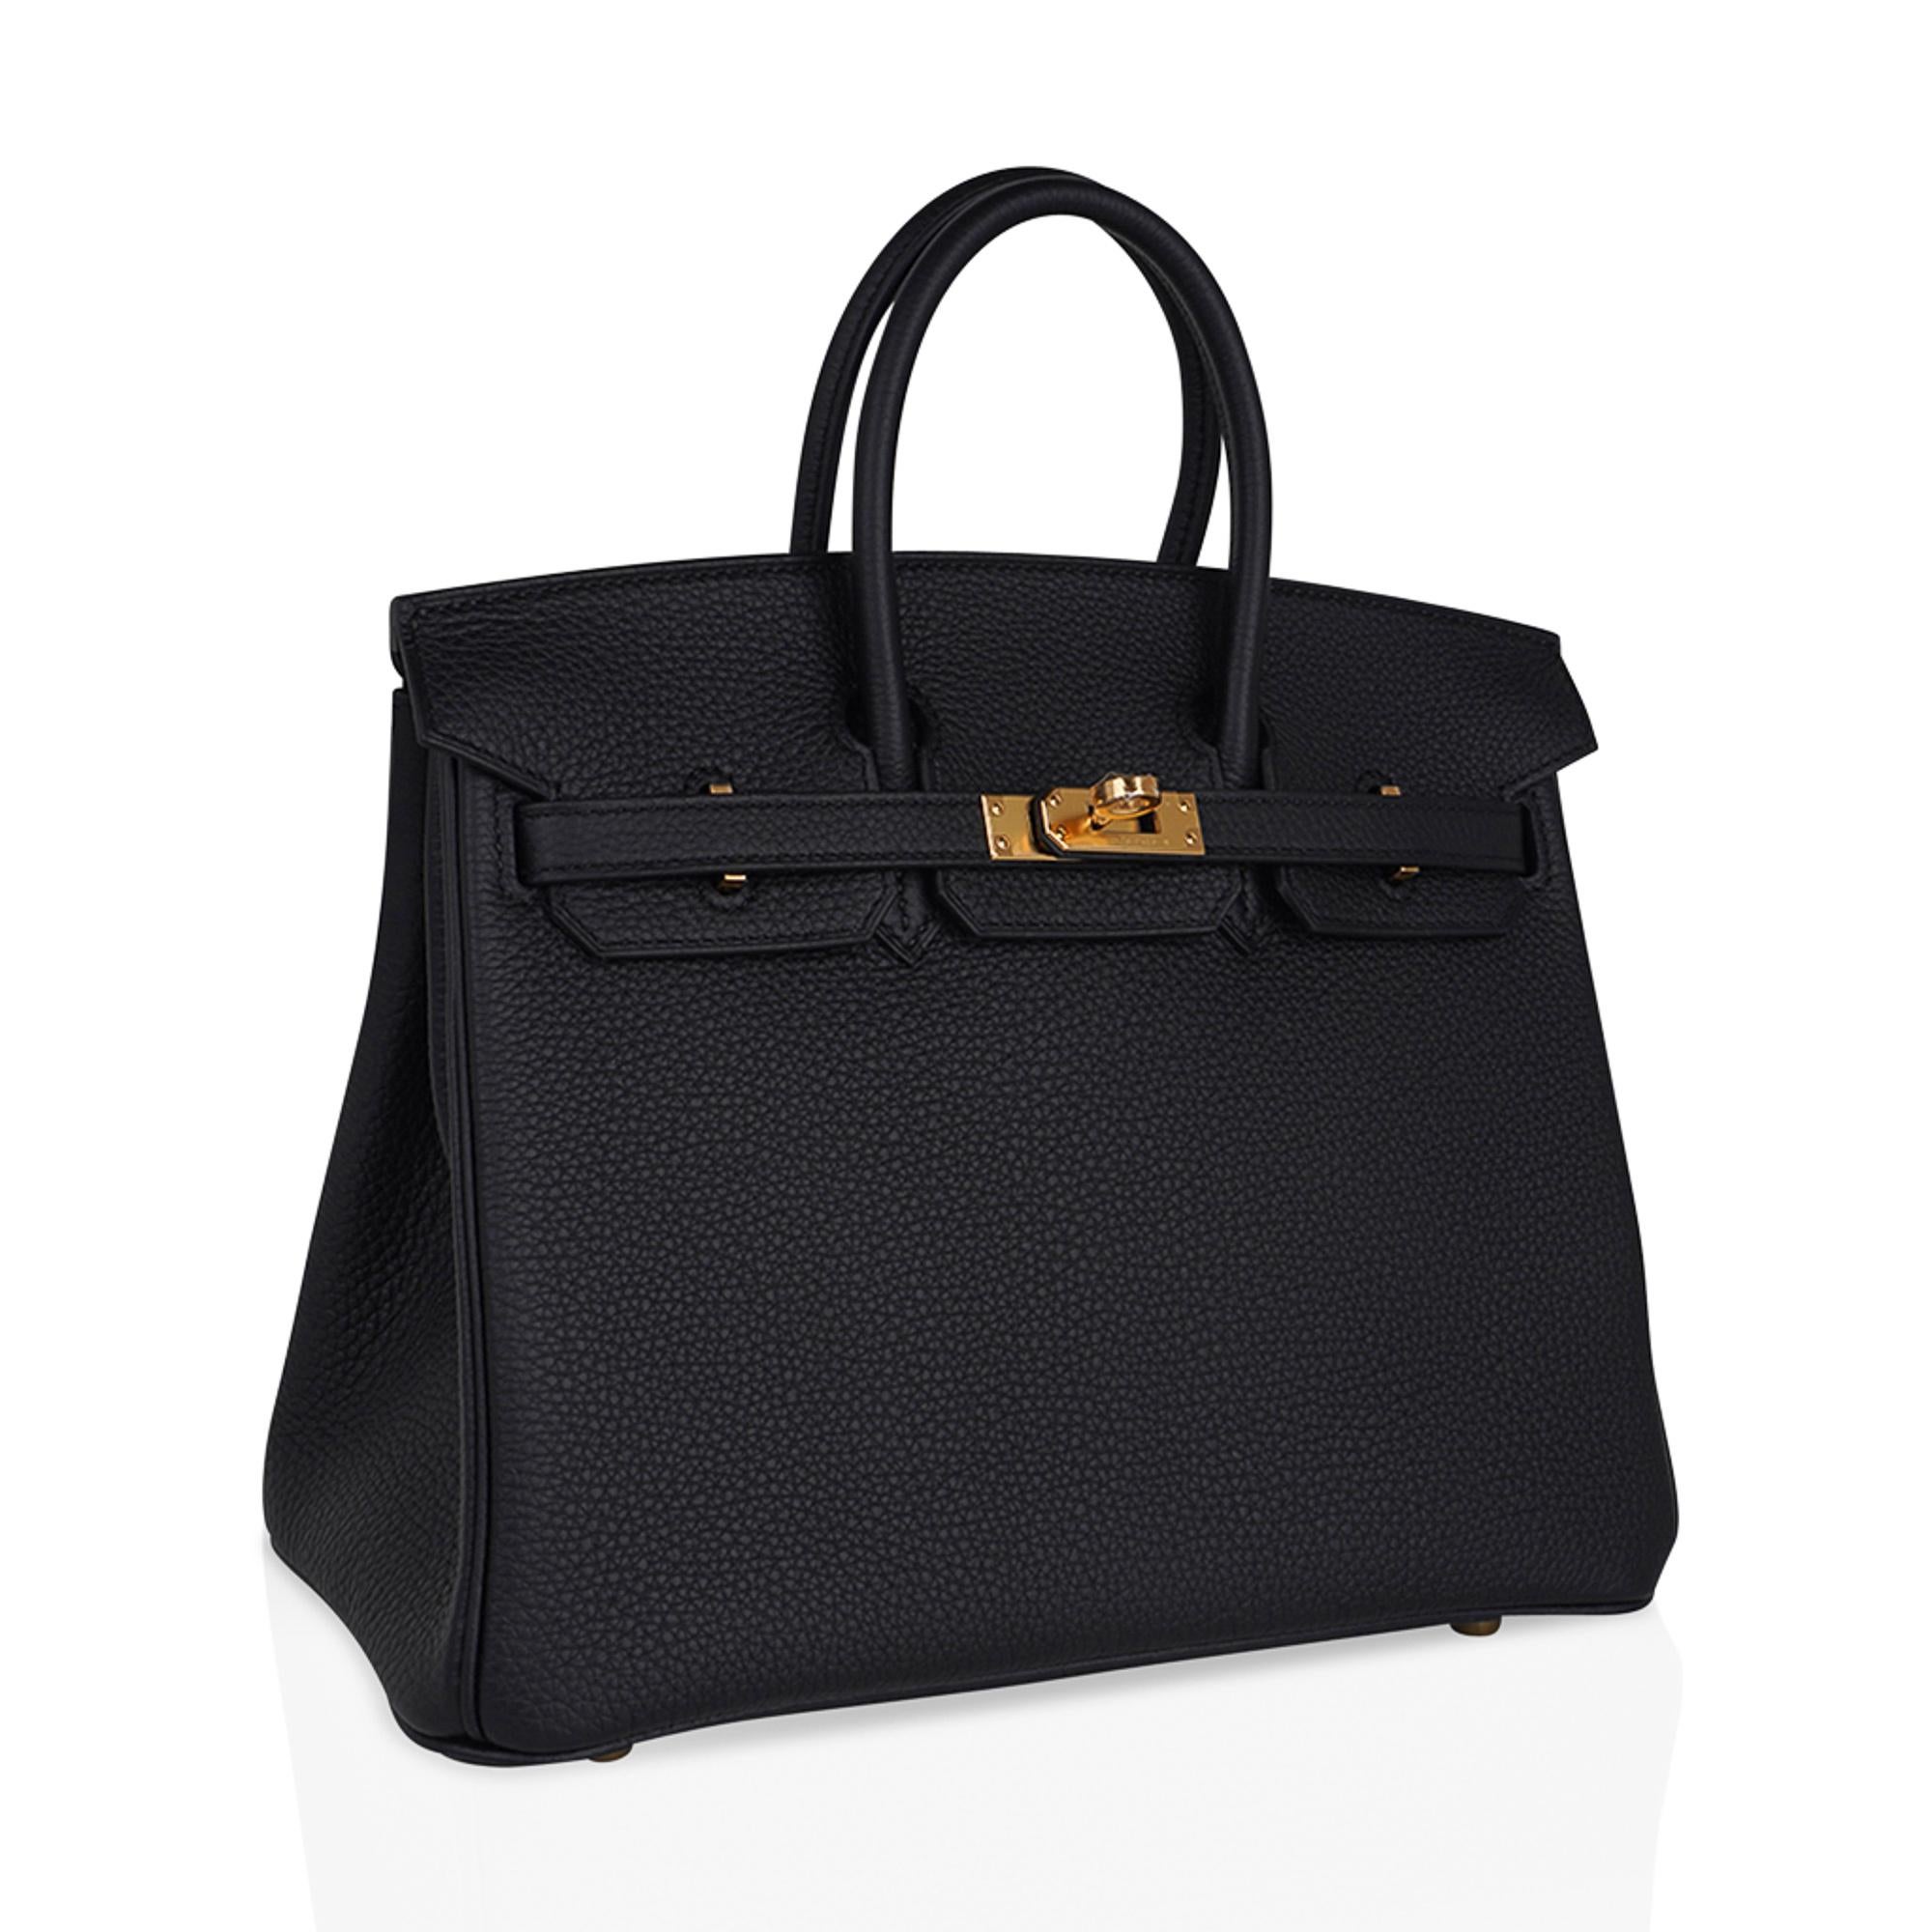 Mightychic propose un sac Hermès Birkin 25 en cuir togo noir classique.
Riche en accessoires dorés, cette beauté est un sac chic pour le jour comme pour le soir.
Le cuir Togo luxueux est souple et résistant aux rayures.
Livré avec serrure, clés,